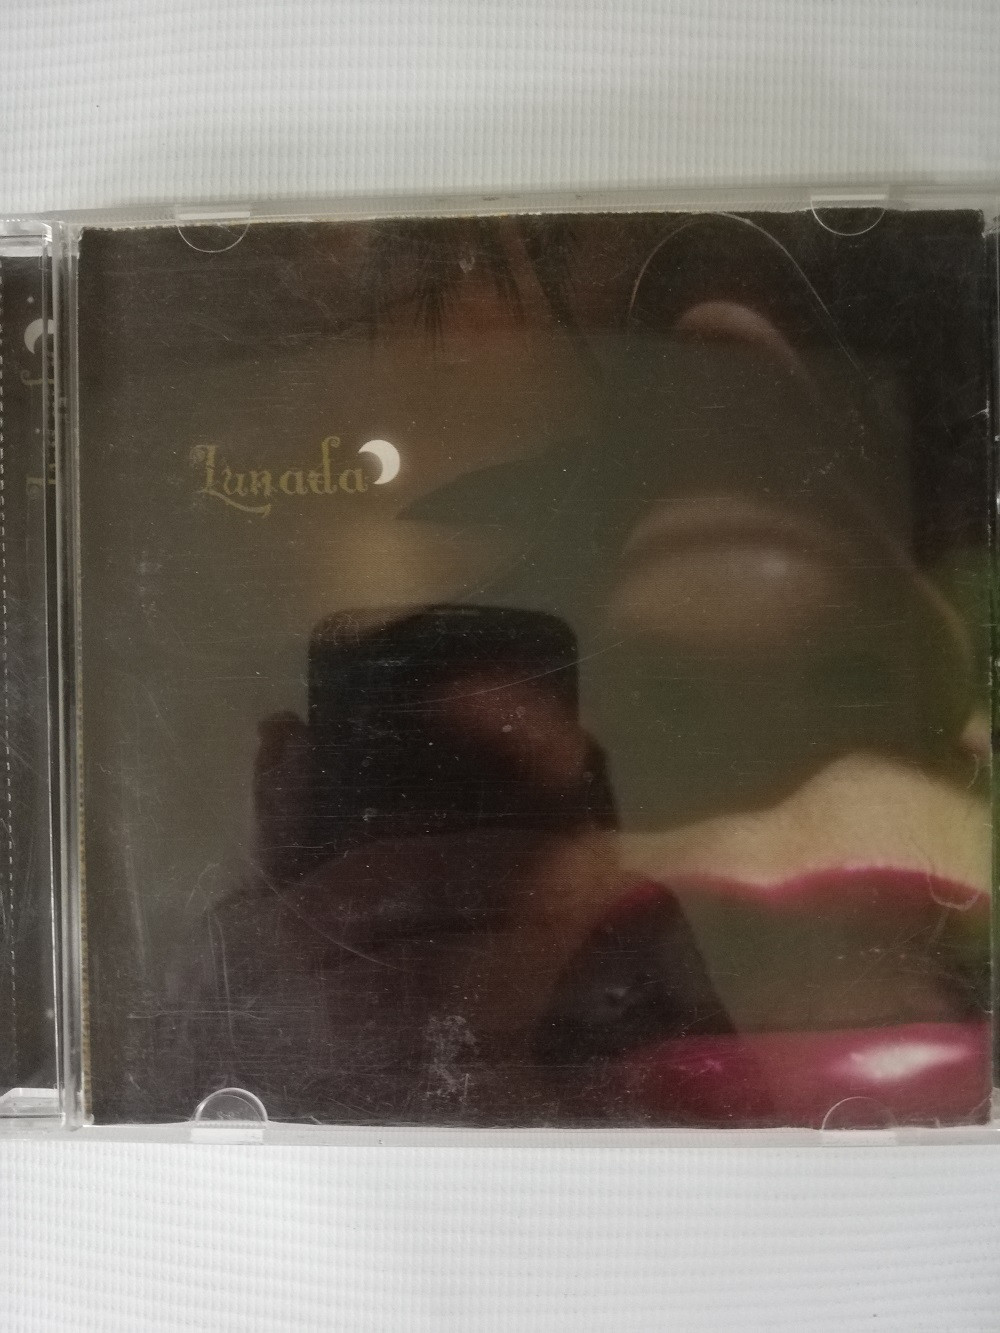 Imagen CD THALIA - LUNADA 1